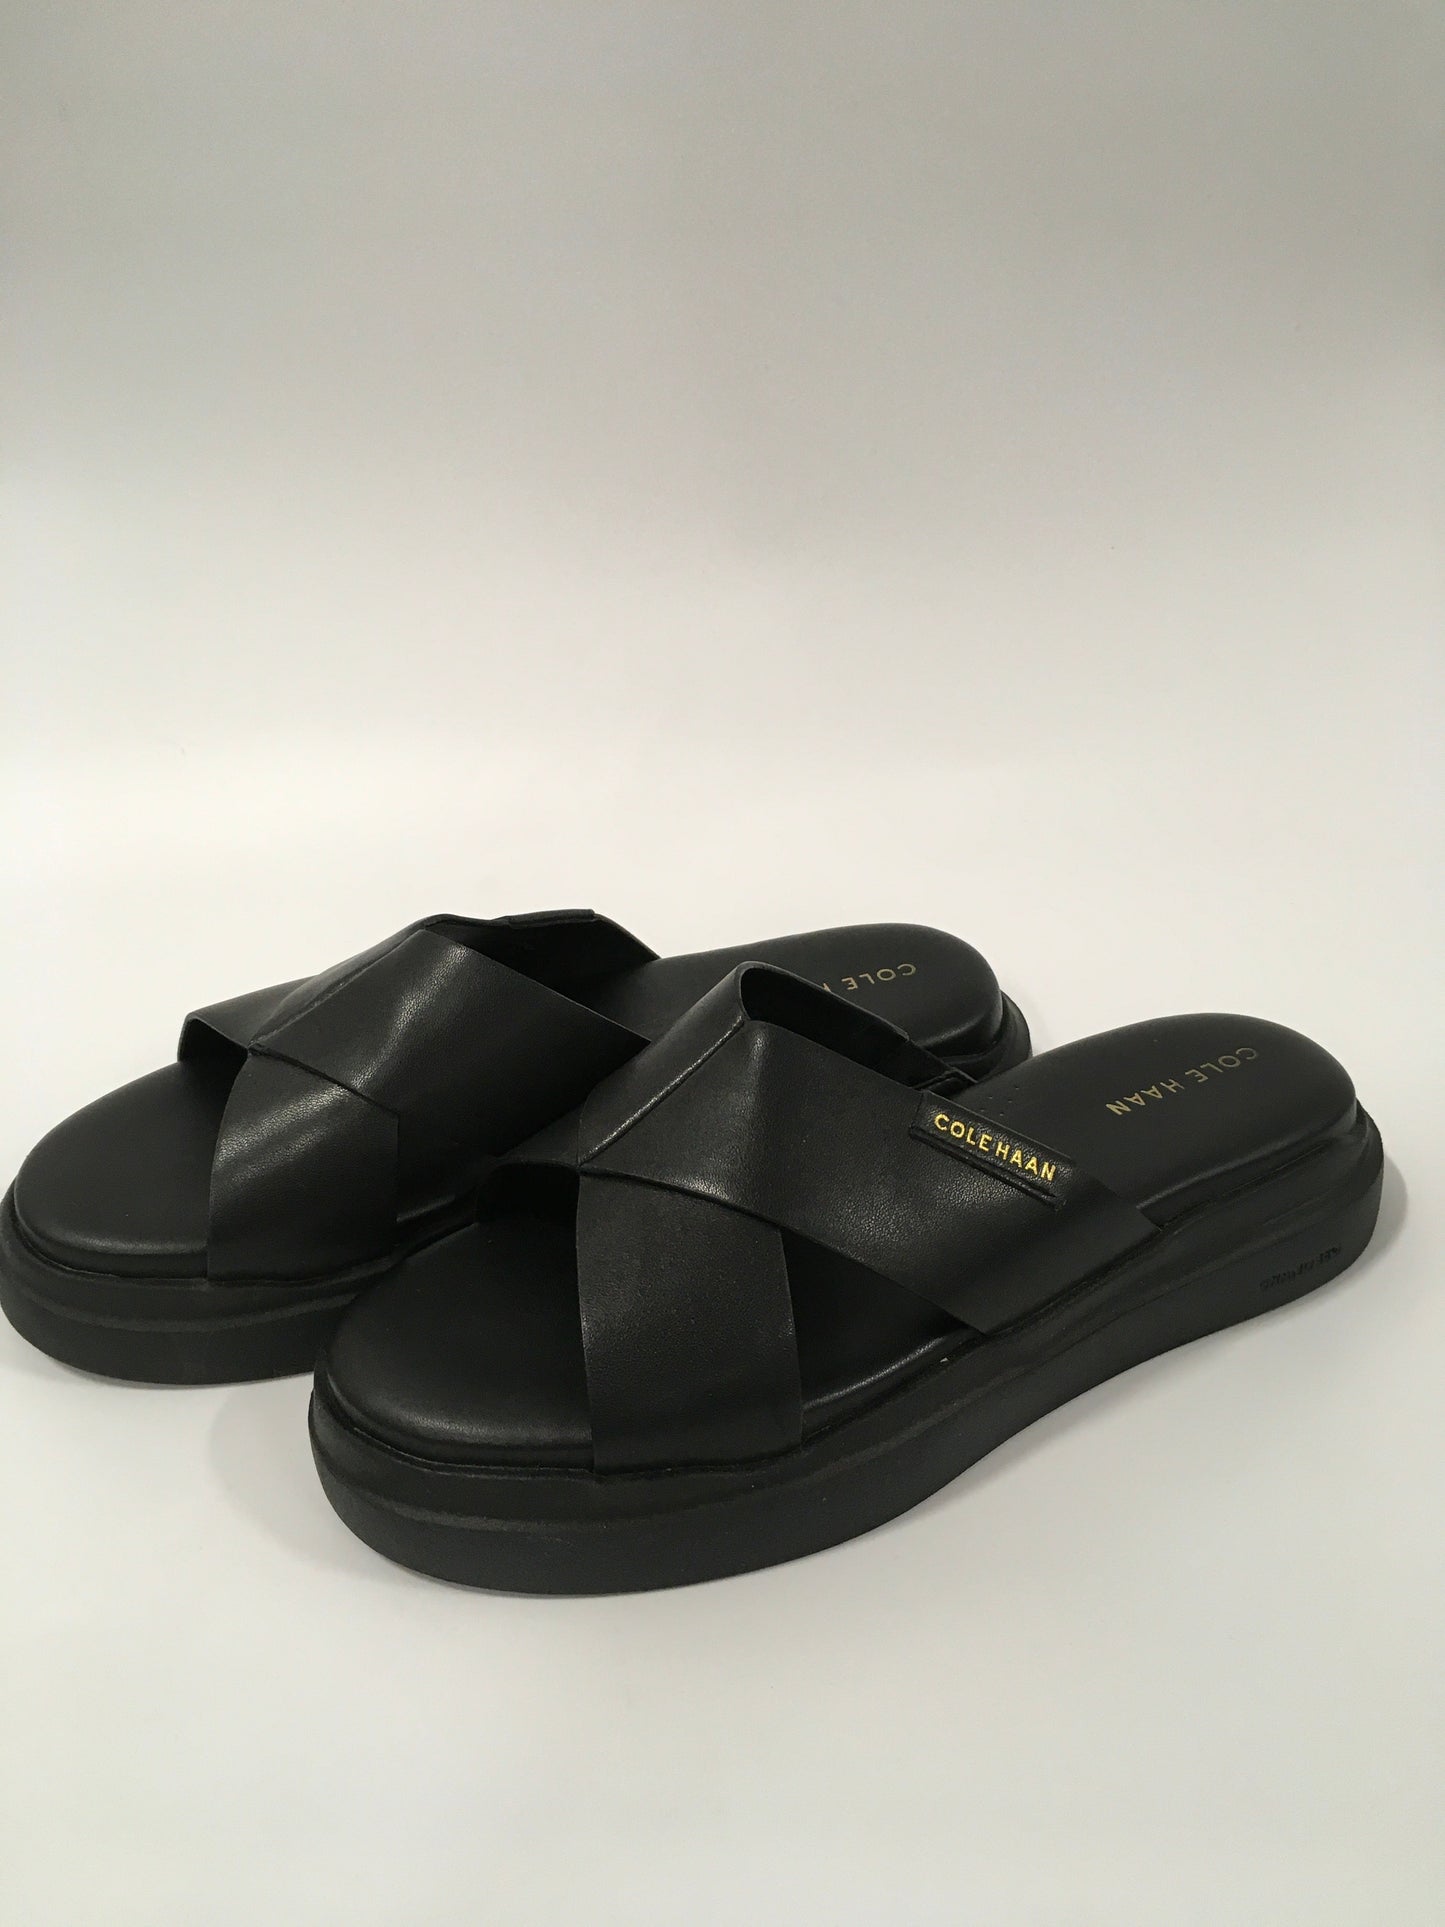 Black Sandals Flats Cole-haan, Size 6